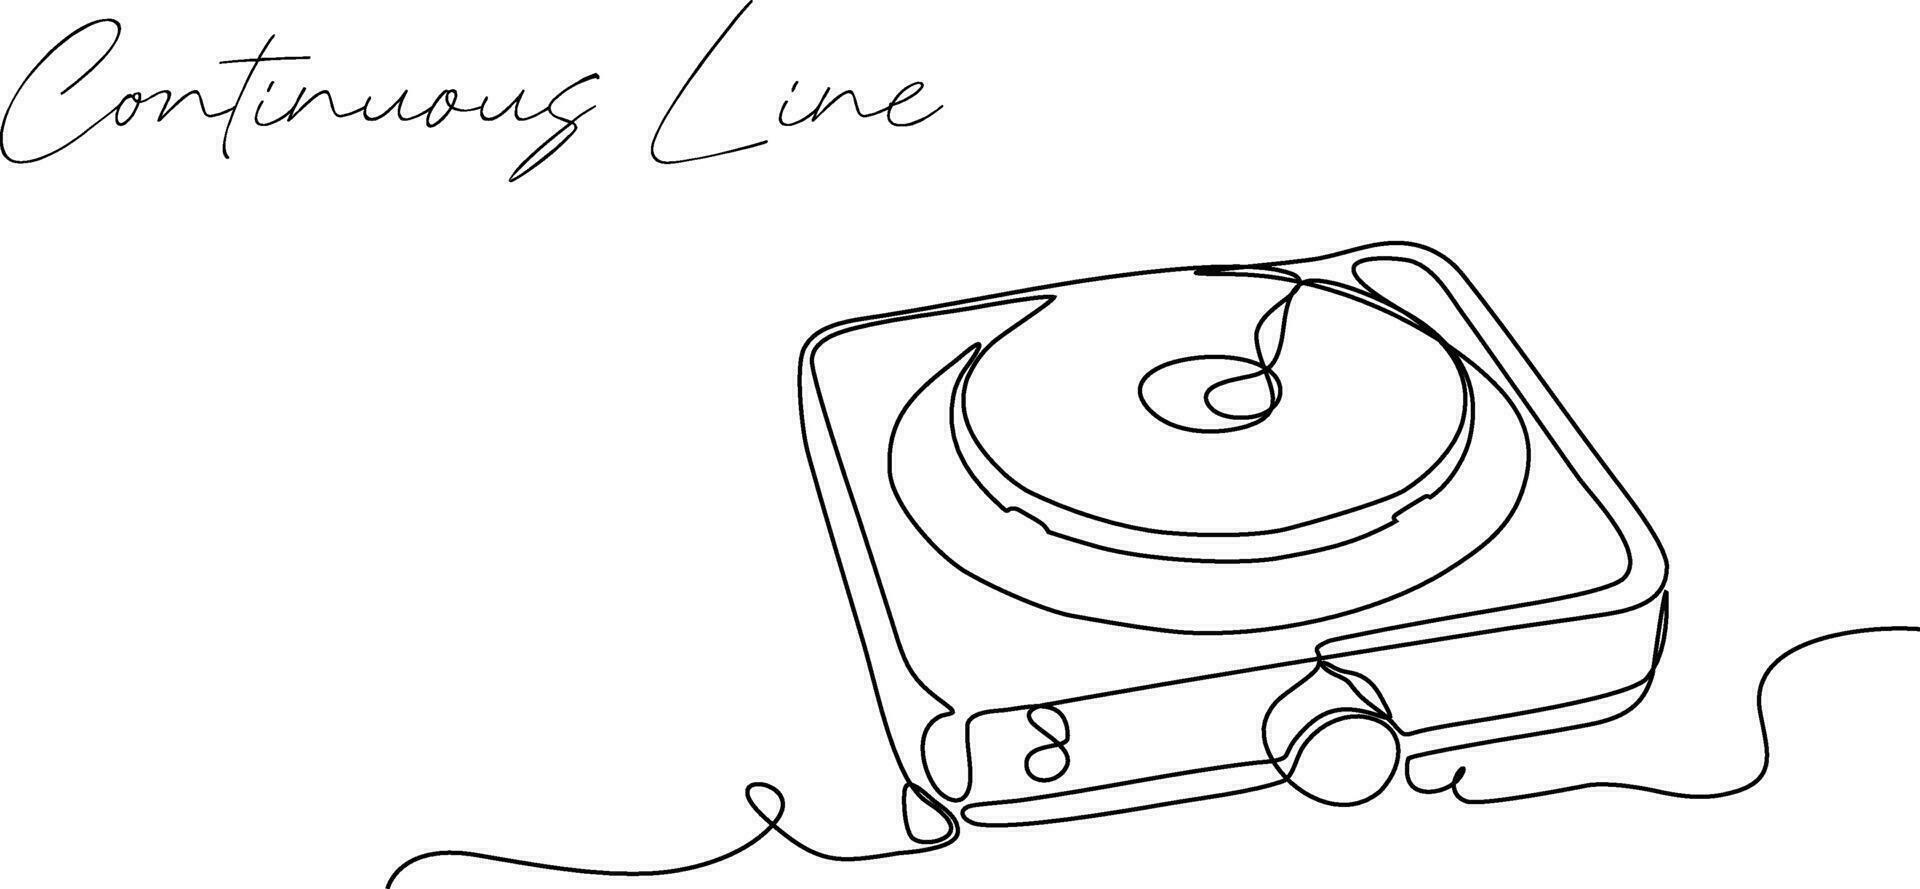 continuo linea disegno di stufa disegnato con uno linea. vettore illustrazione.